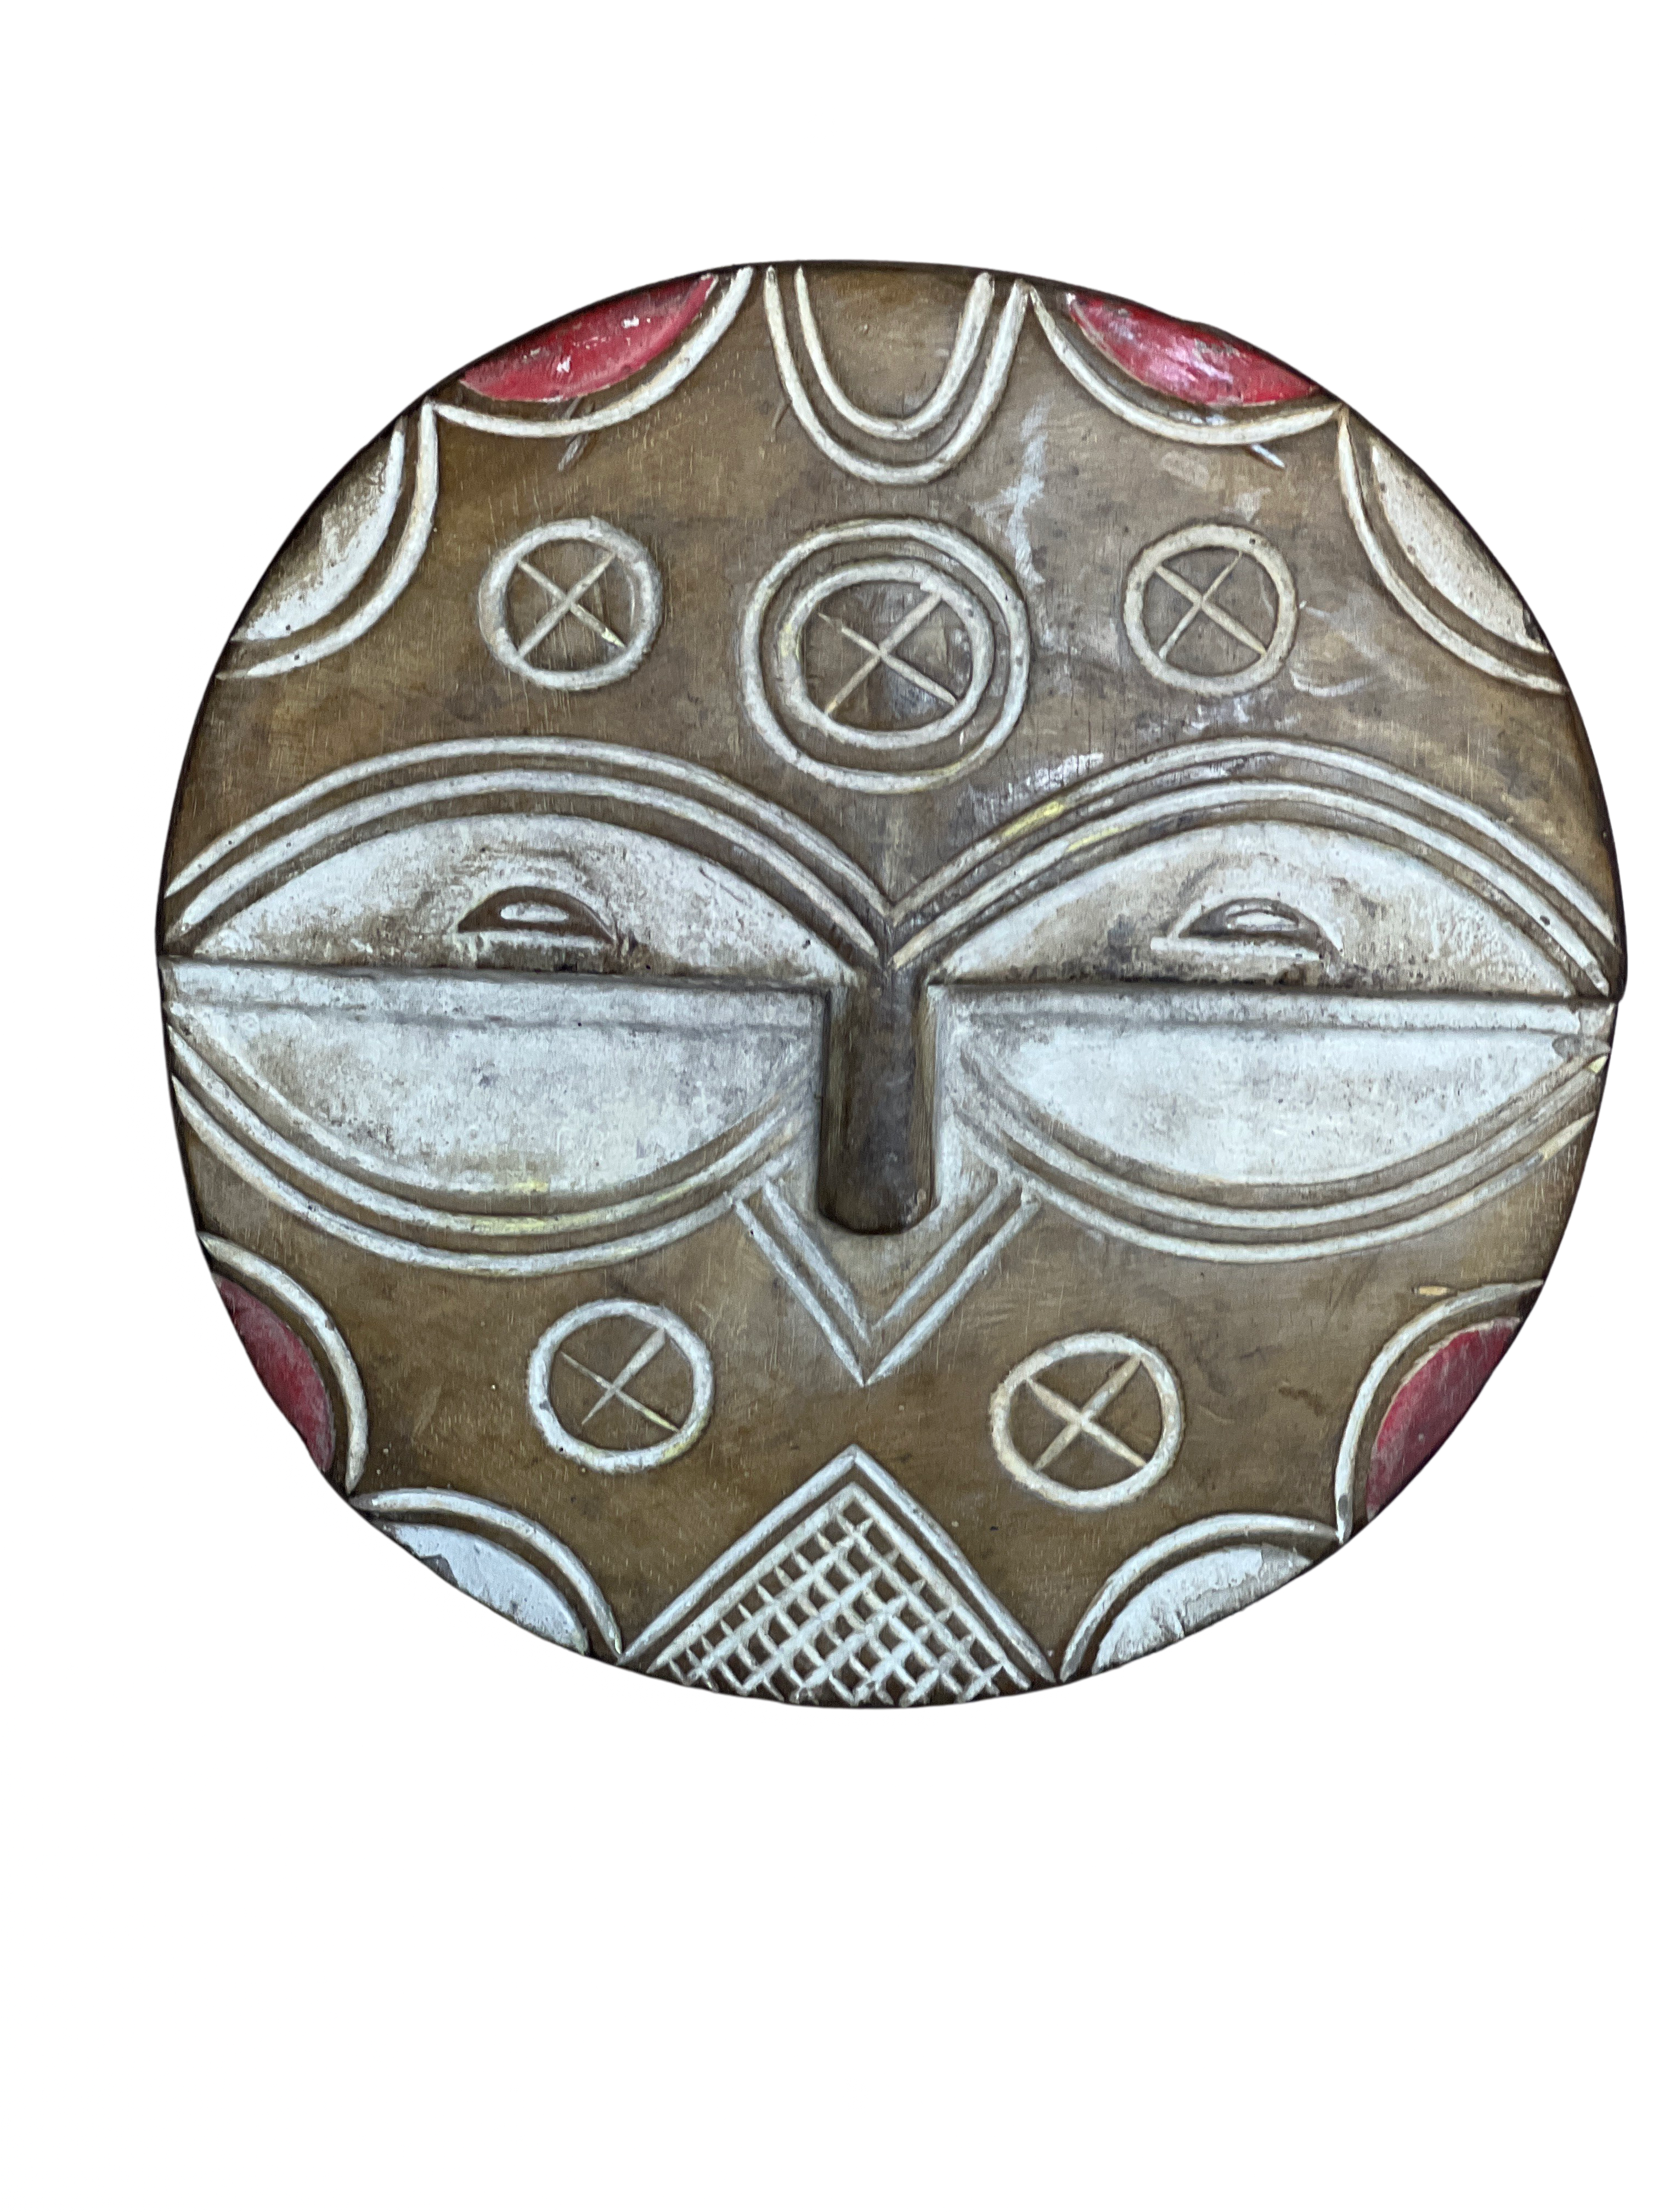 Bateke/Teke Tribe Mask